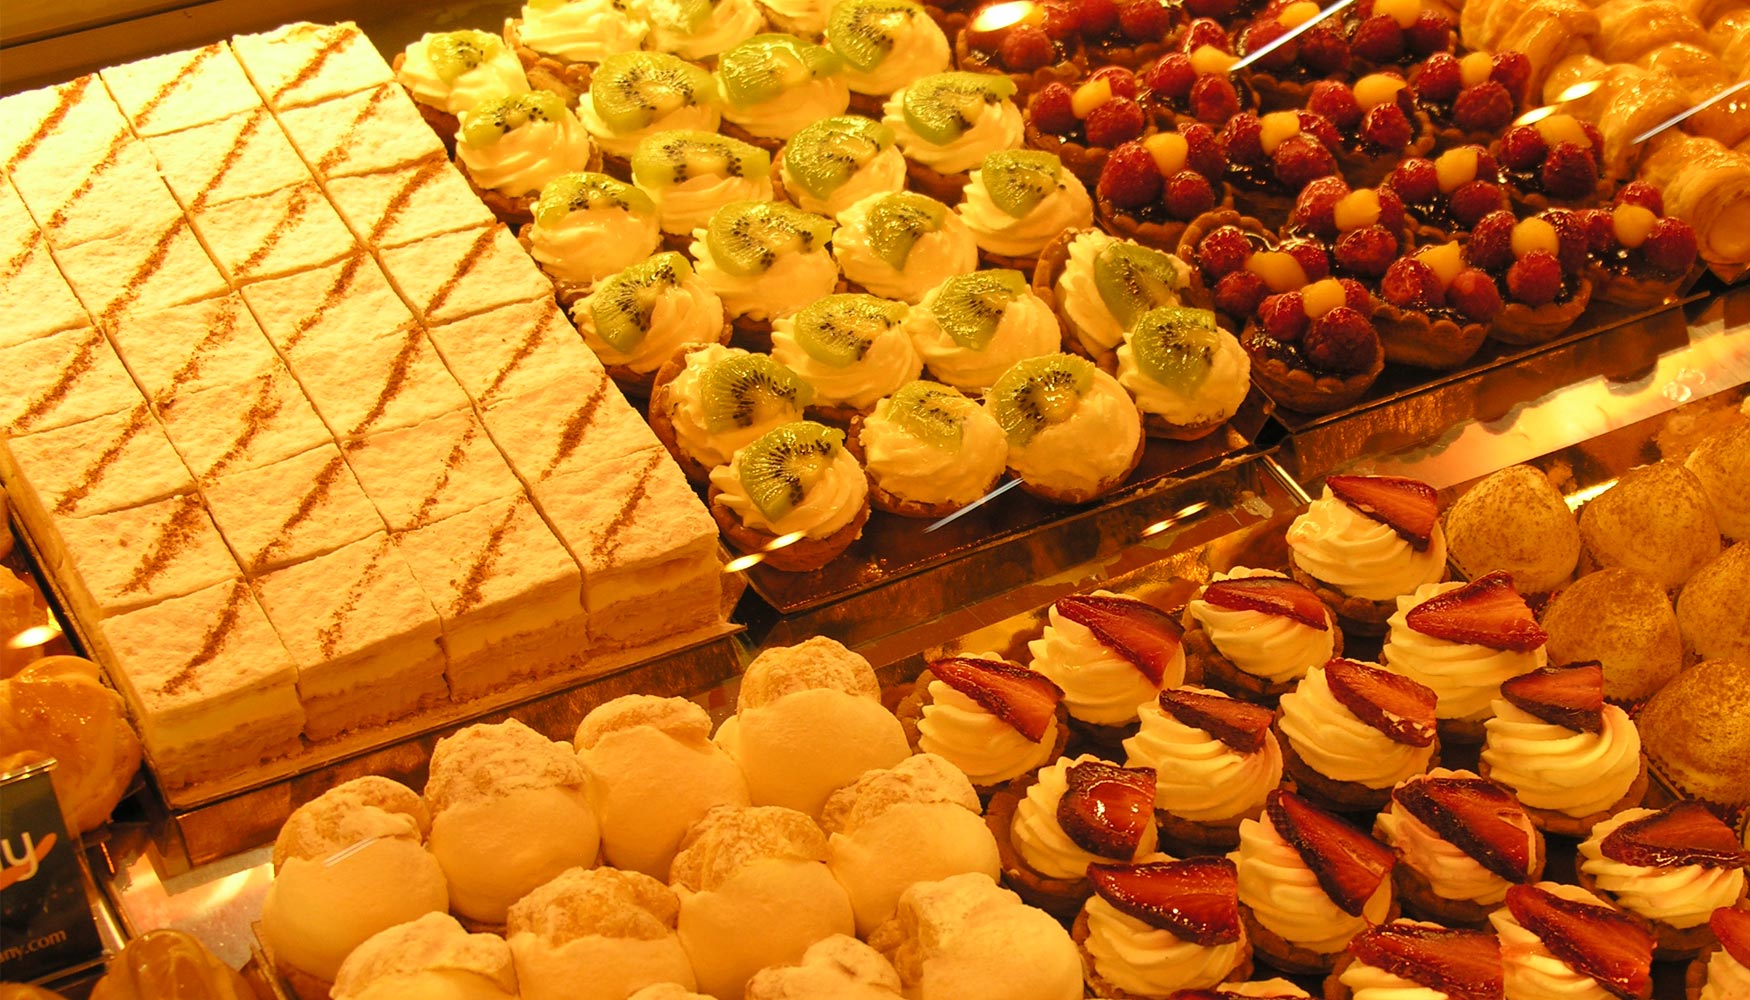 lechuga contraste galope La industria de panadería, bollería y pastelería apuesta por la variedad  con más de 400 referencias de productos - Alimentación